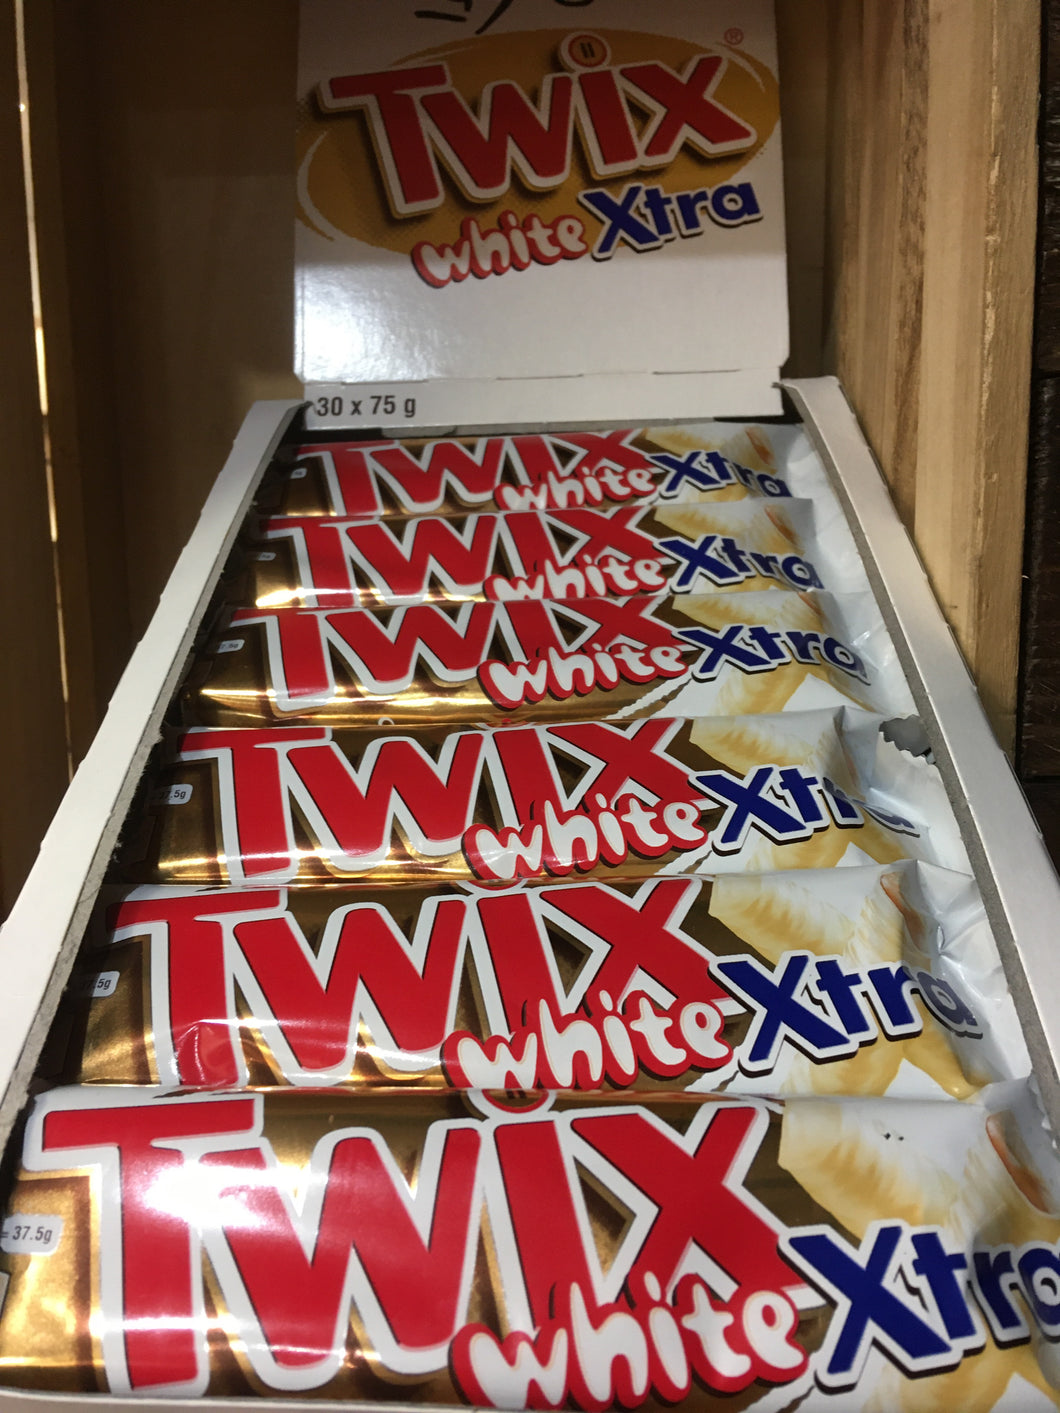 15x Twix White Xtra (15x75g)